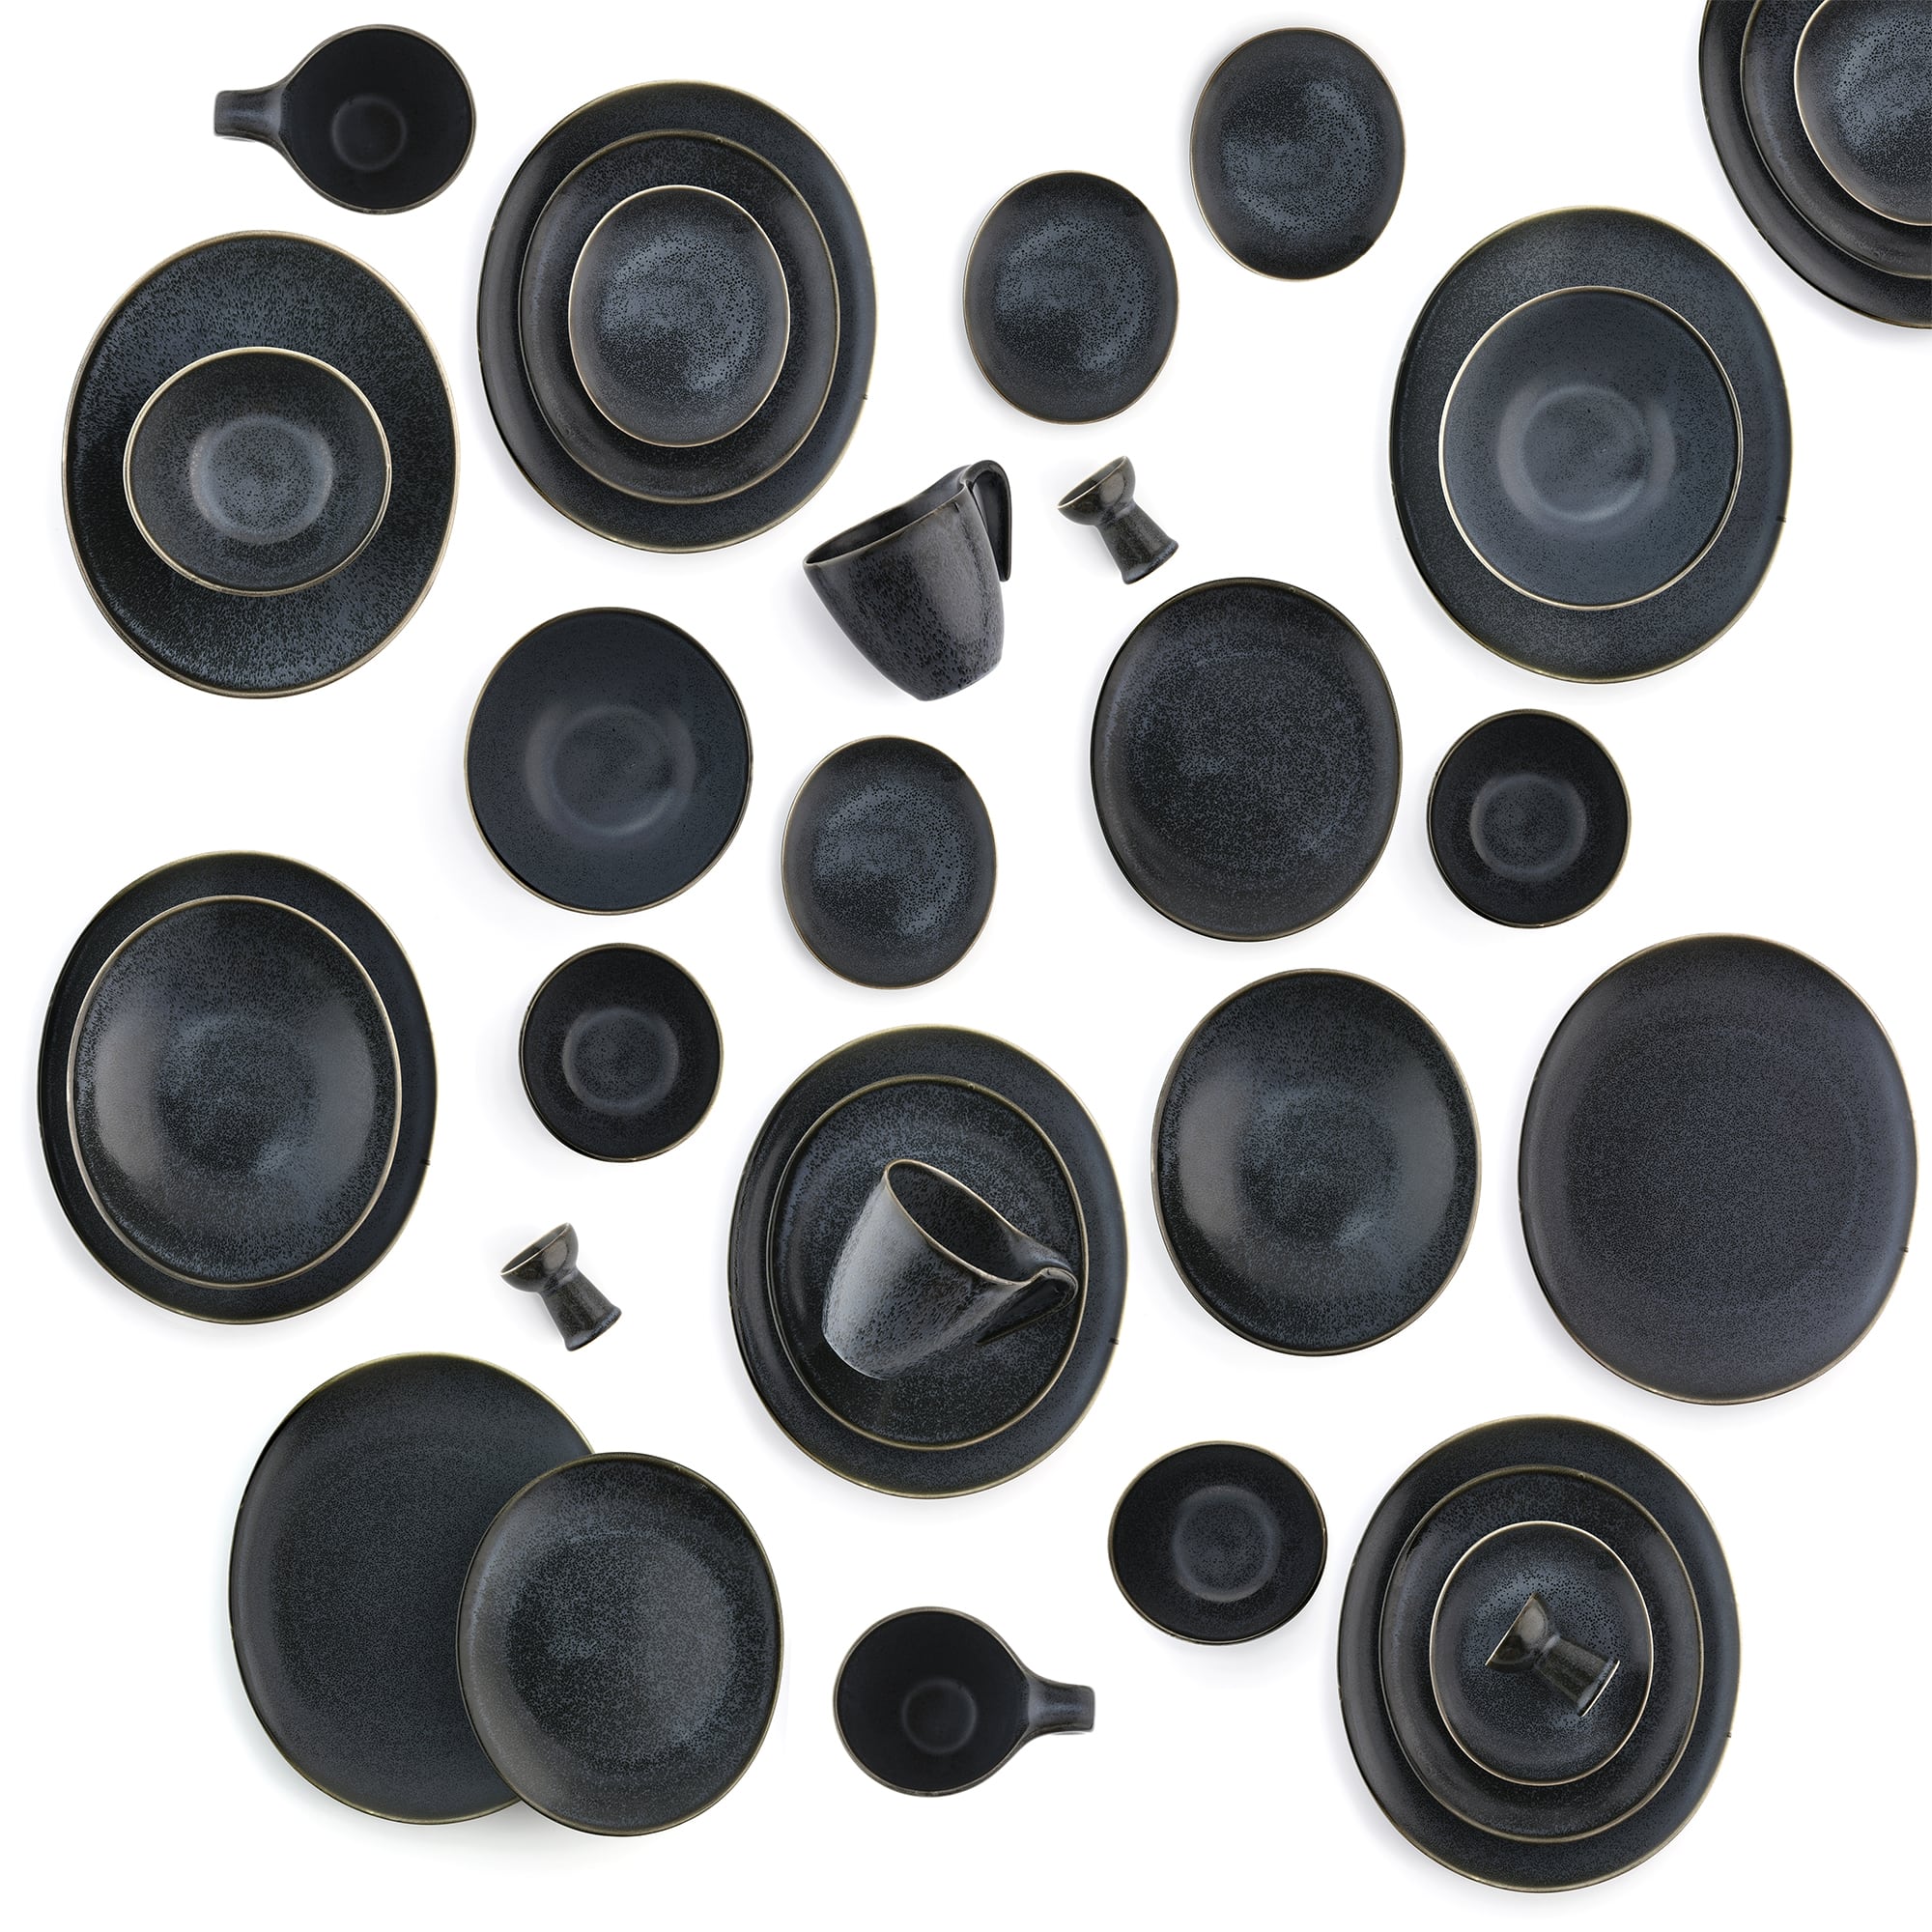 15-OZ Black Porcelain Bowl & Saucer Set